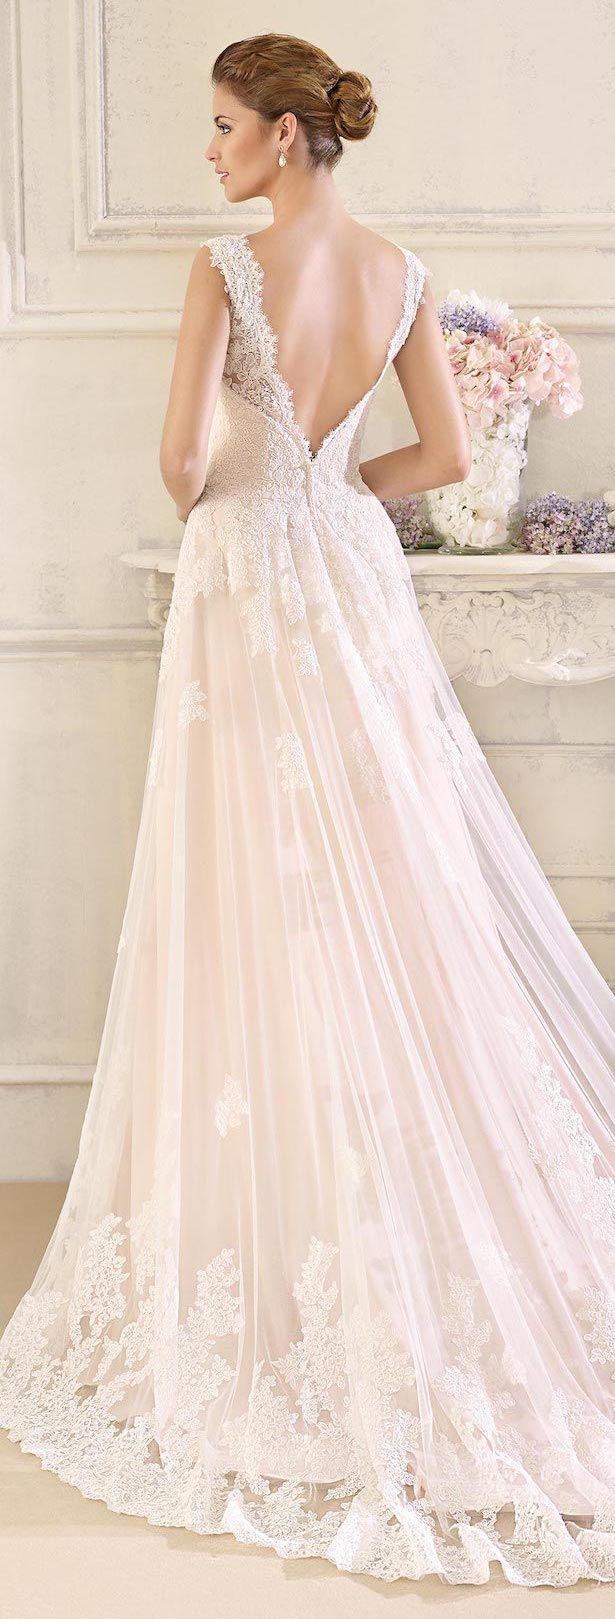 Wedding - Wedding Dresses By Fara Sposa 2017 Bridal Collection